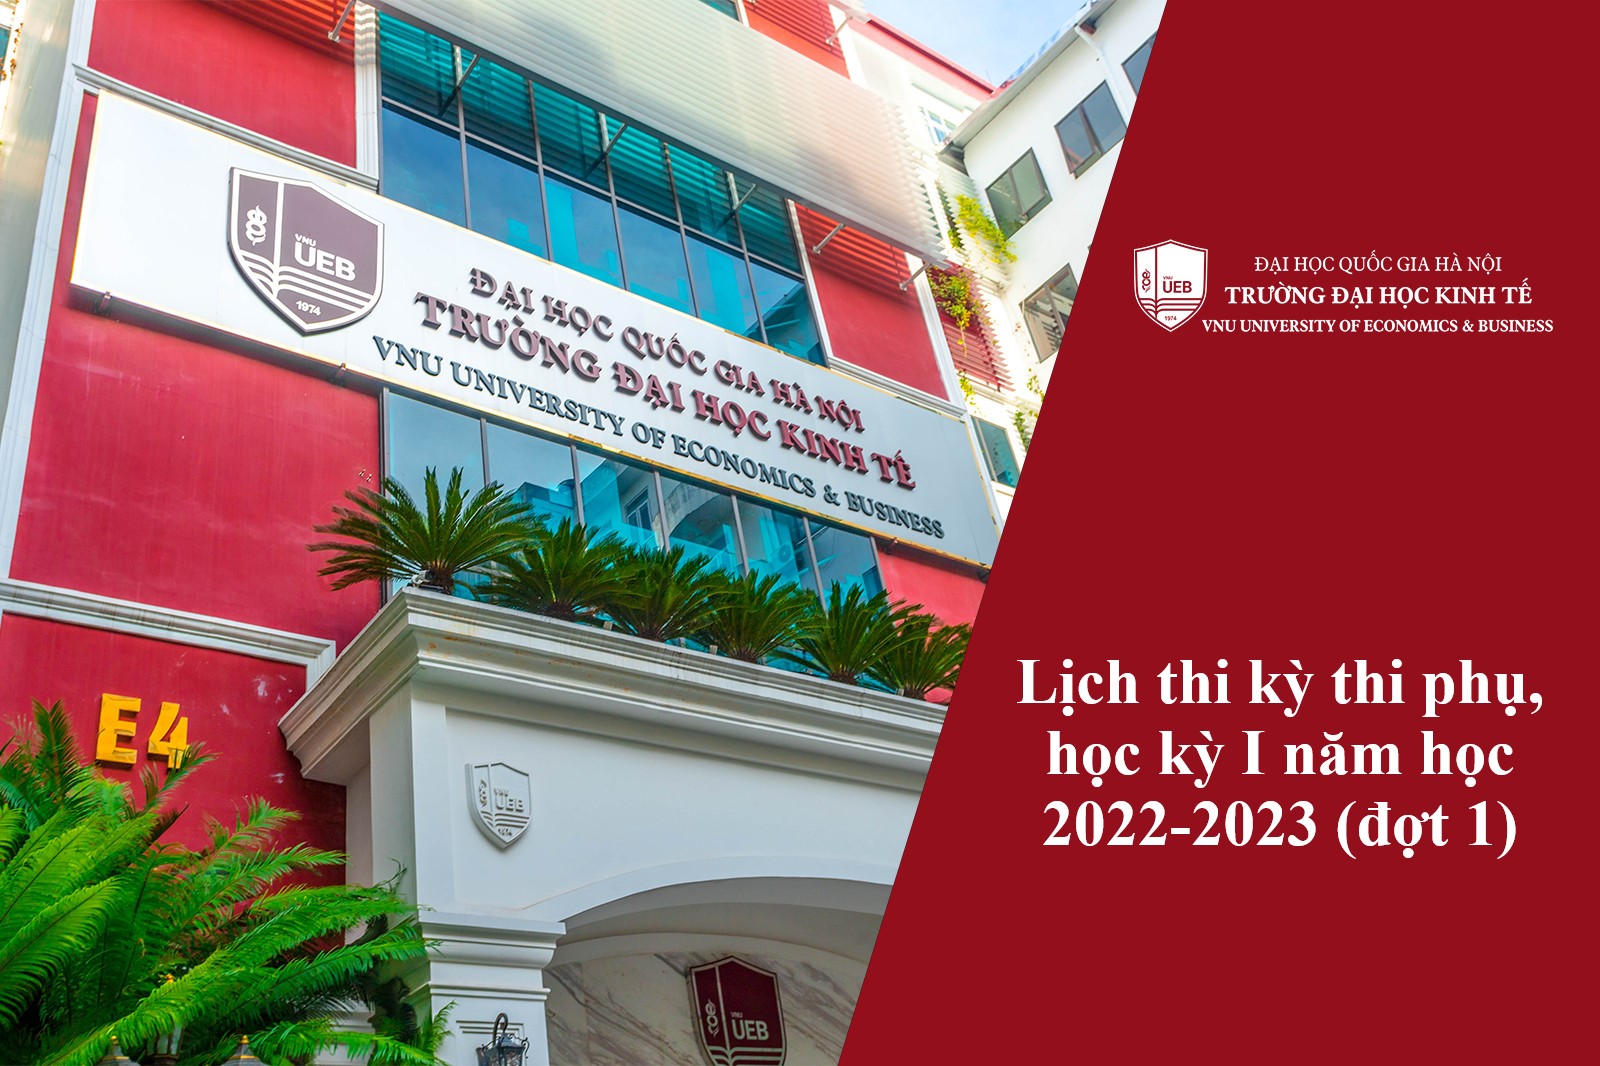 Lịch thi kỳ thi phụ, học kỳ I năm học 2022-2023 (đợt 1)